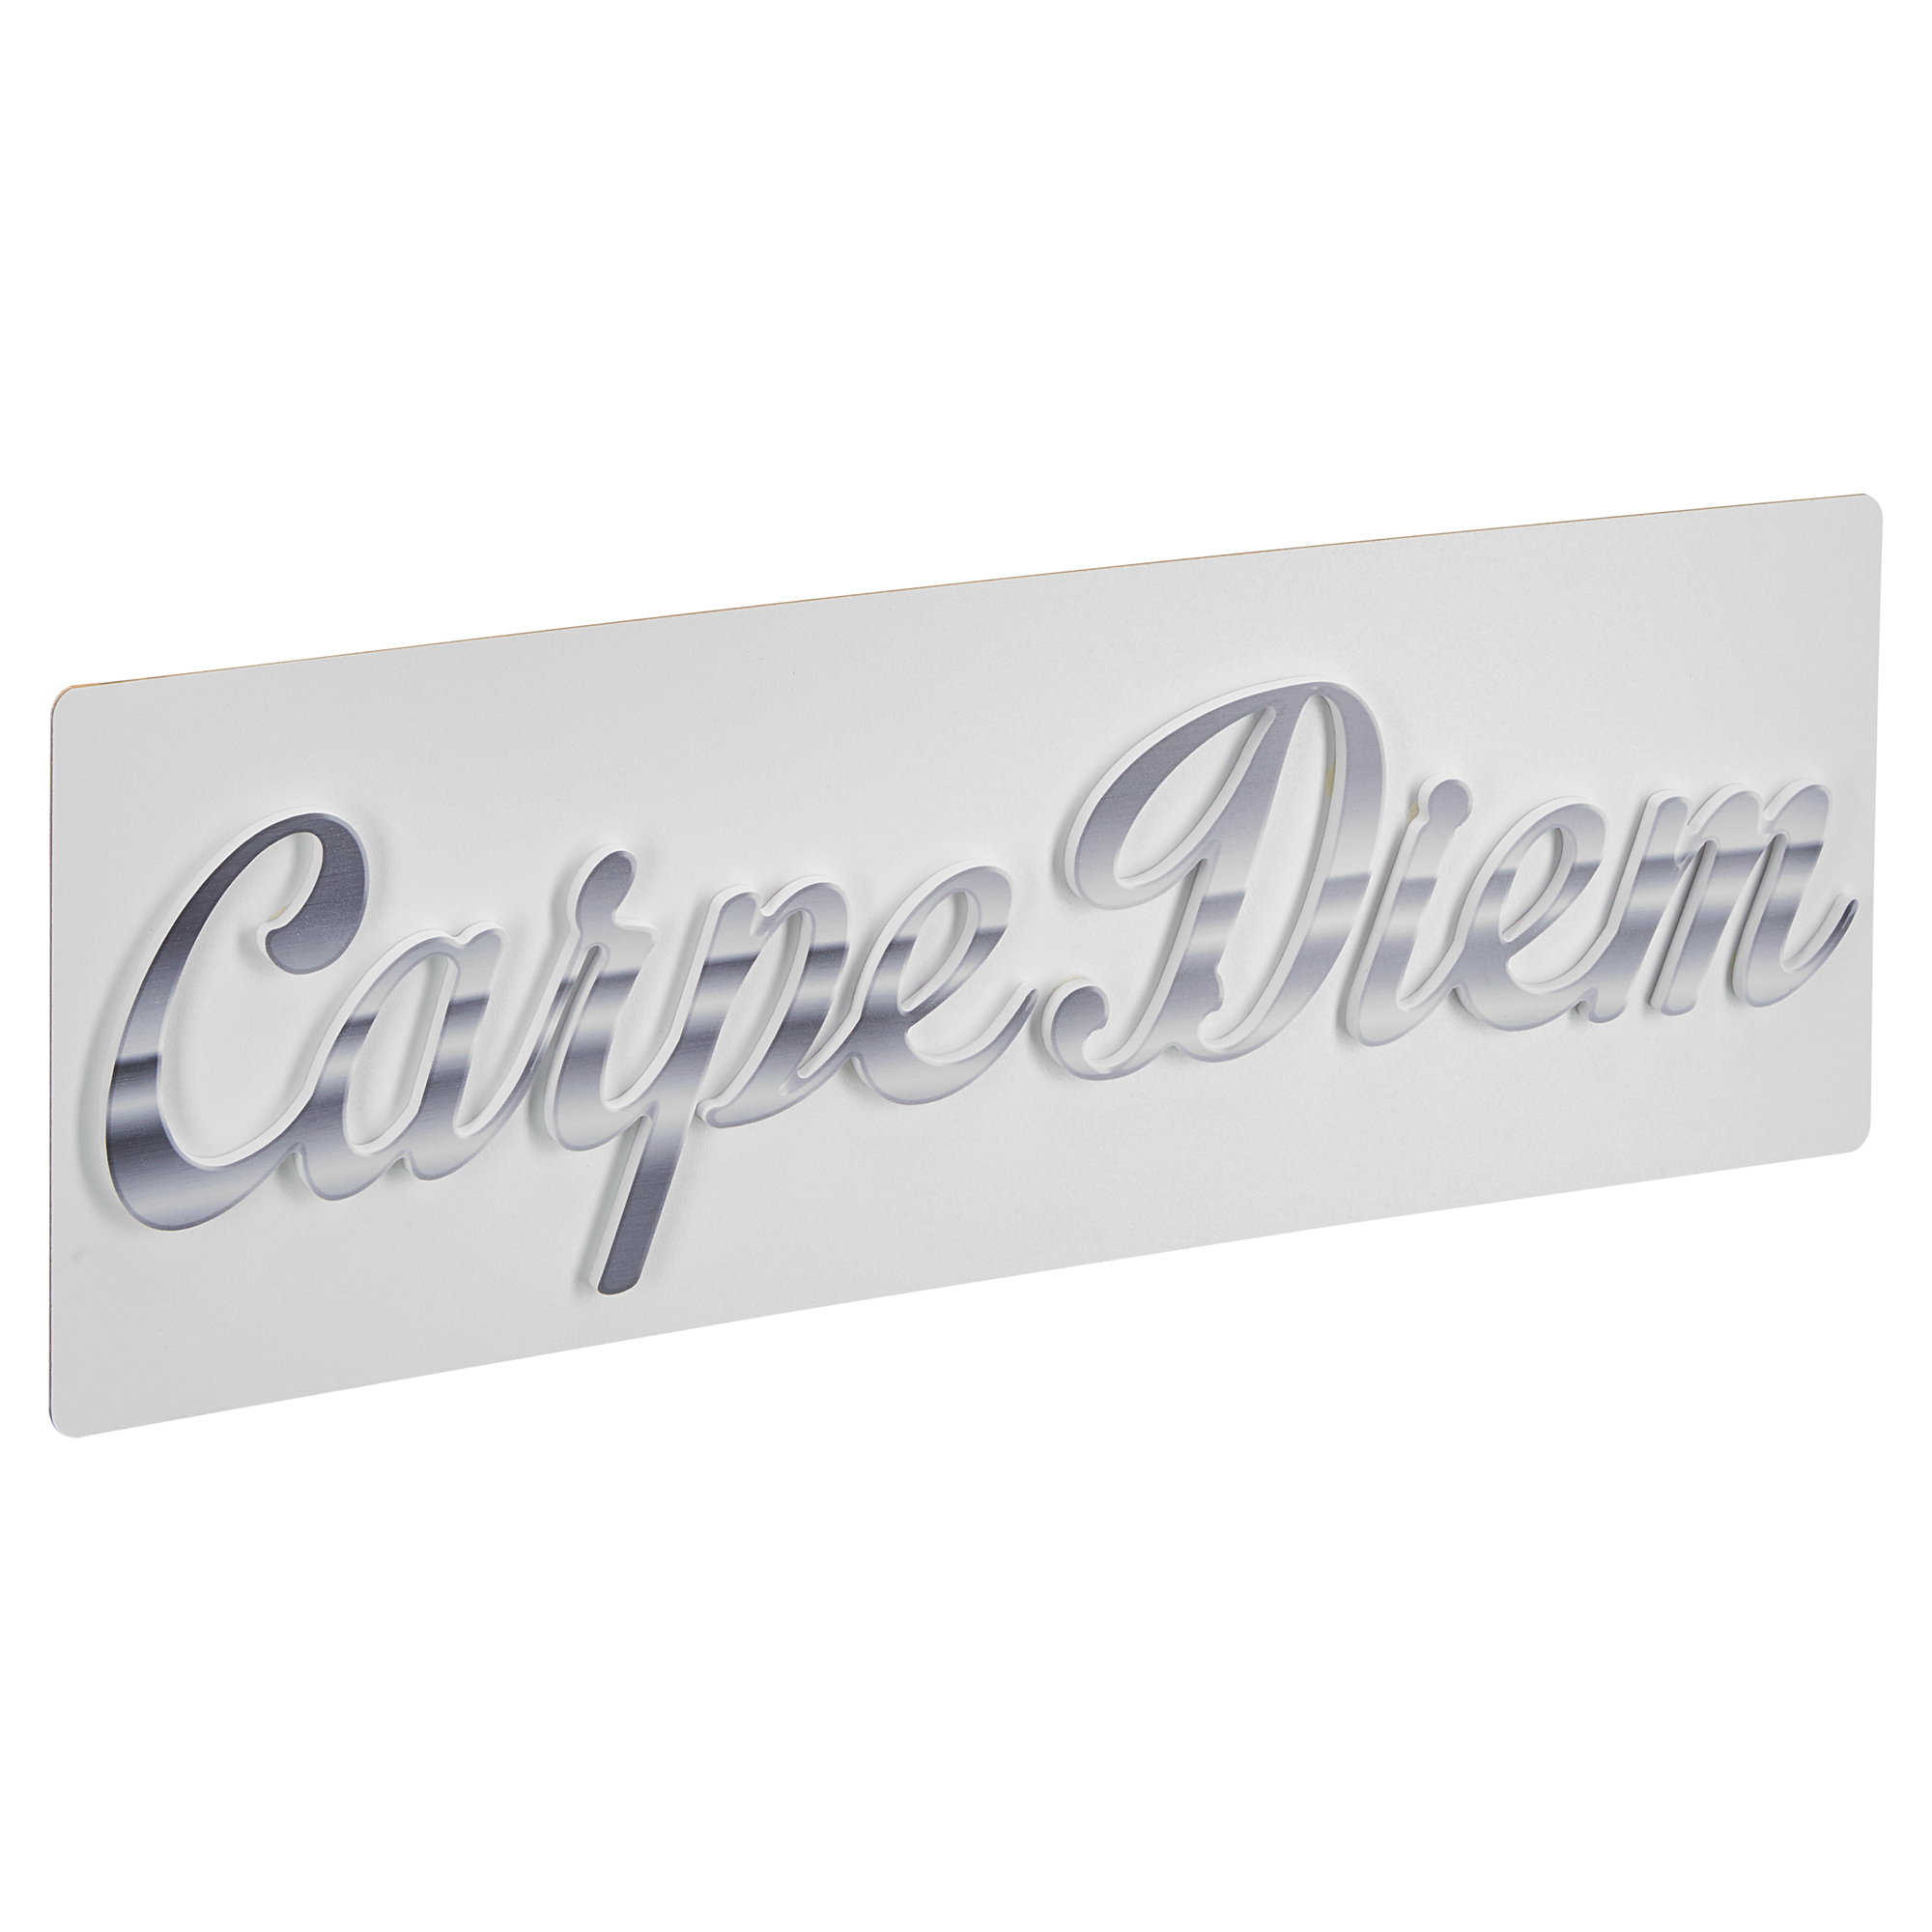 Decopanel "Carpe Diem" Cut-out 70 x 25 cm + product picture